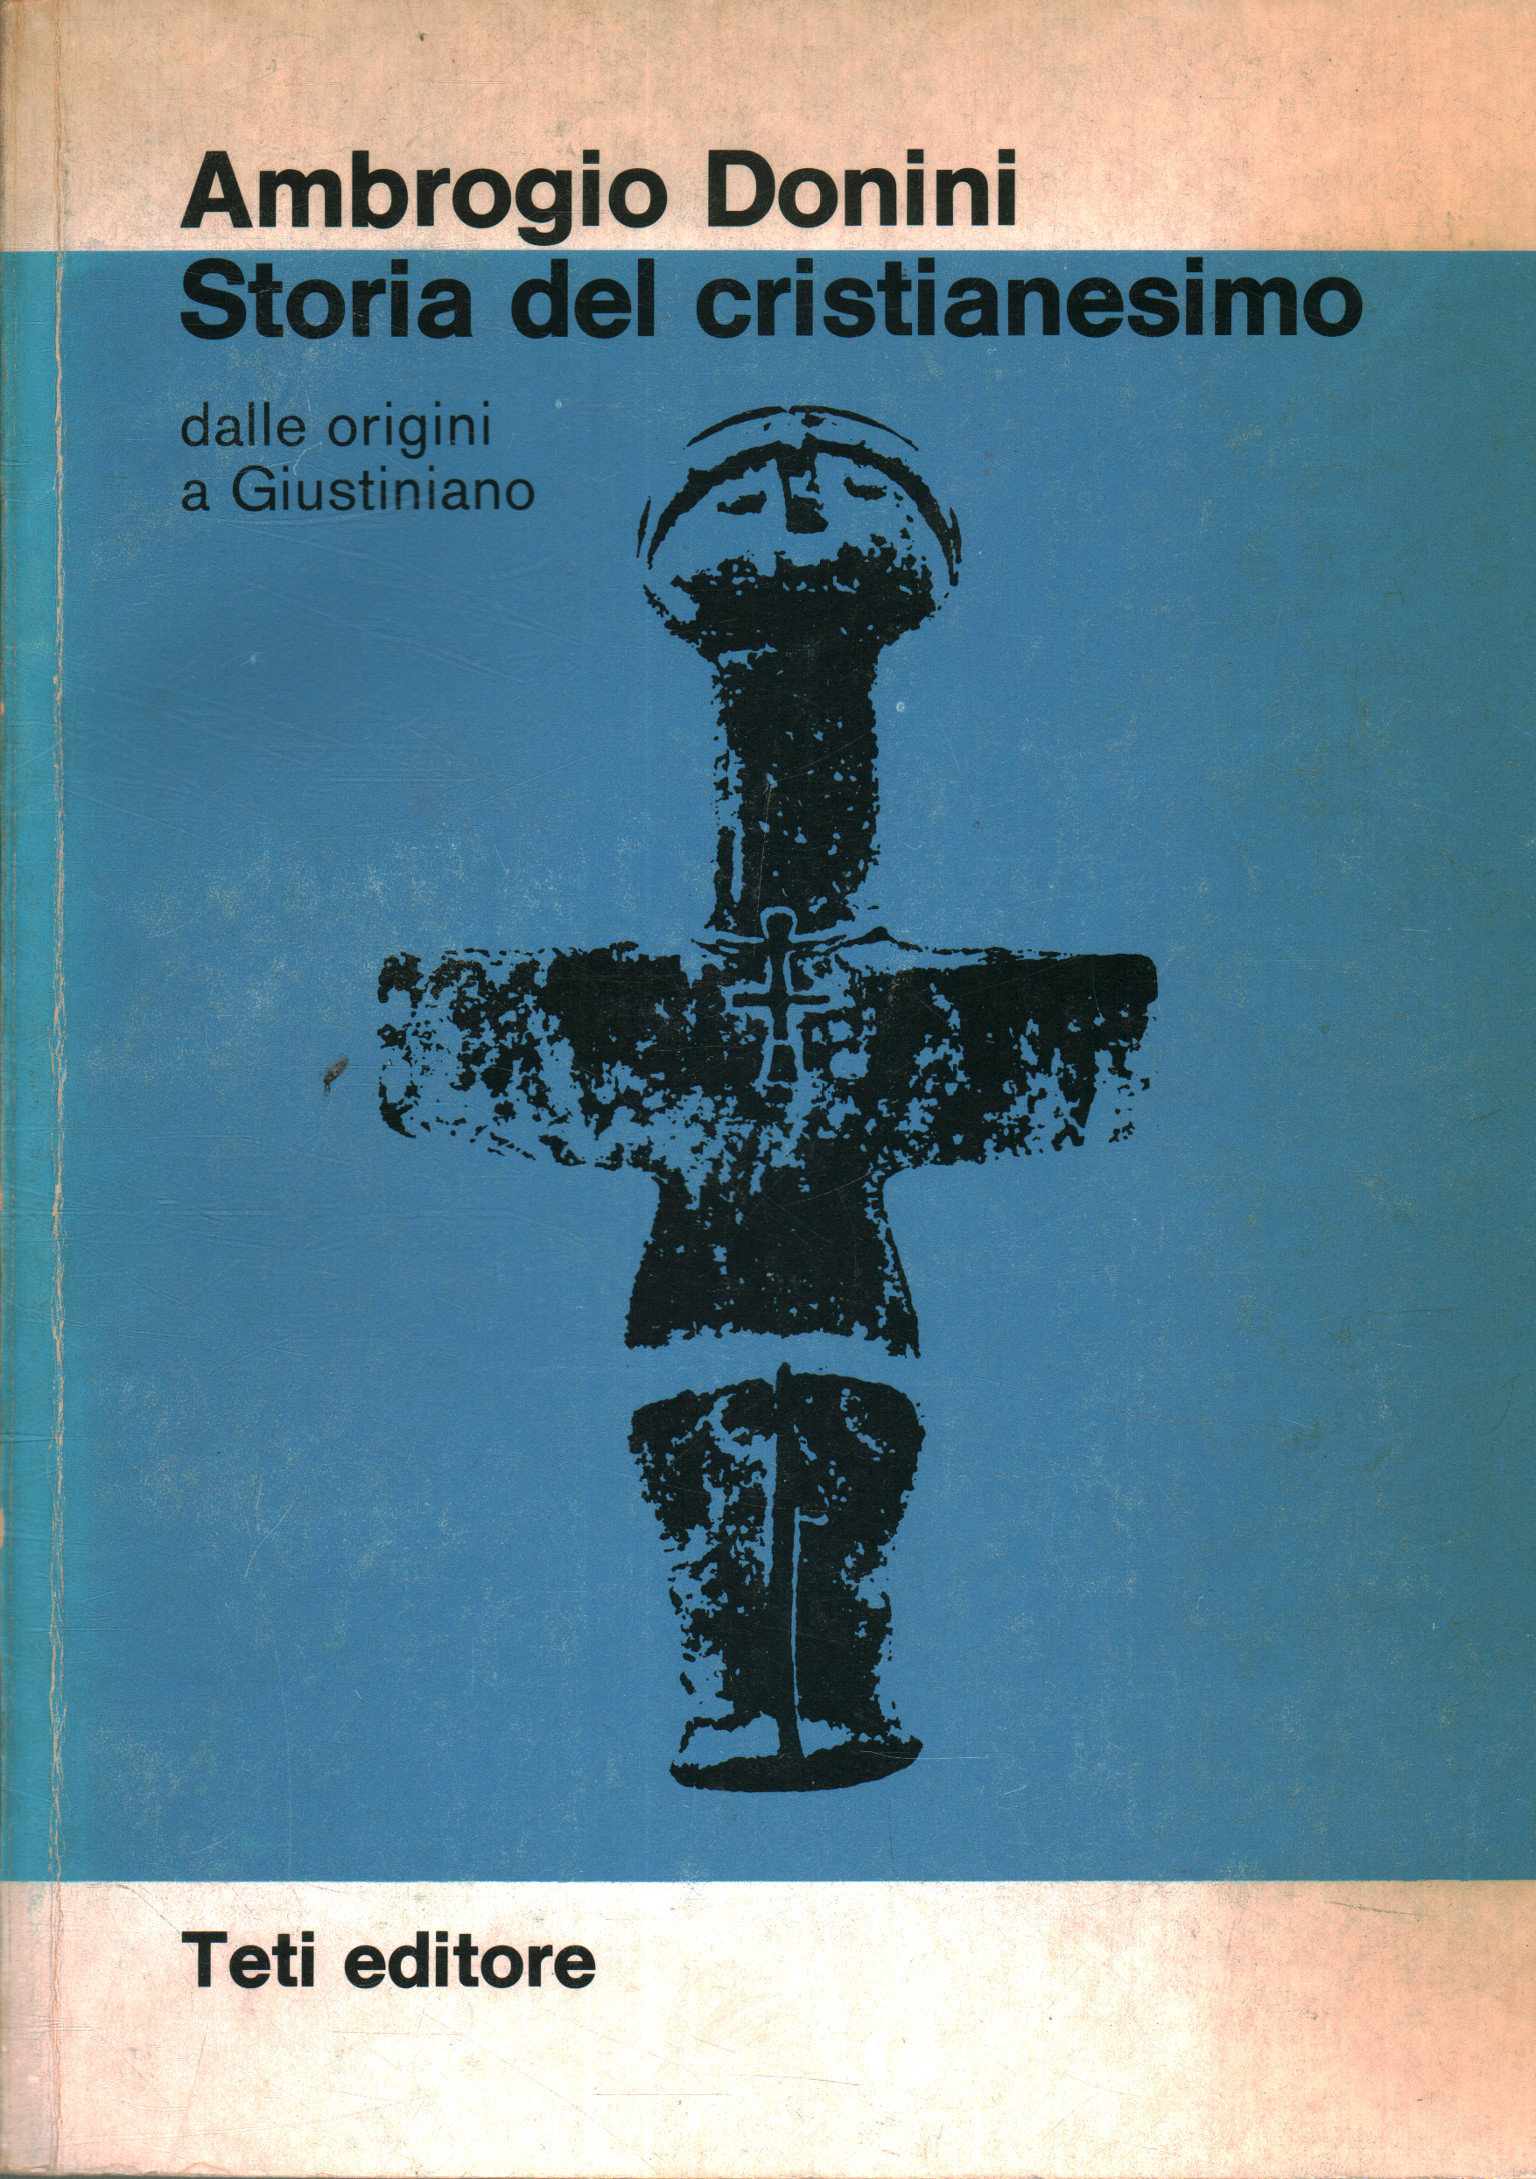 Geschichte des Christentums, Ambrogio Donini